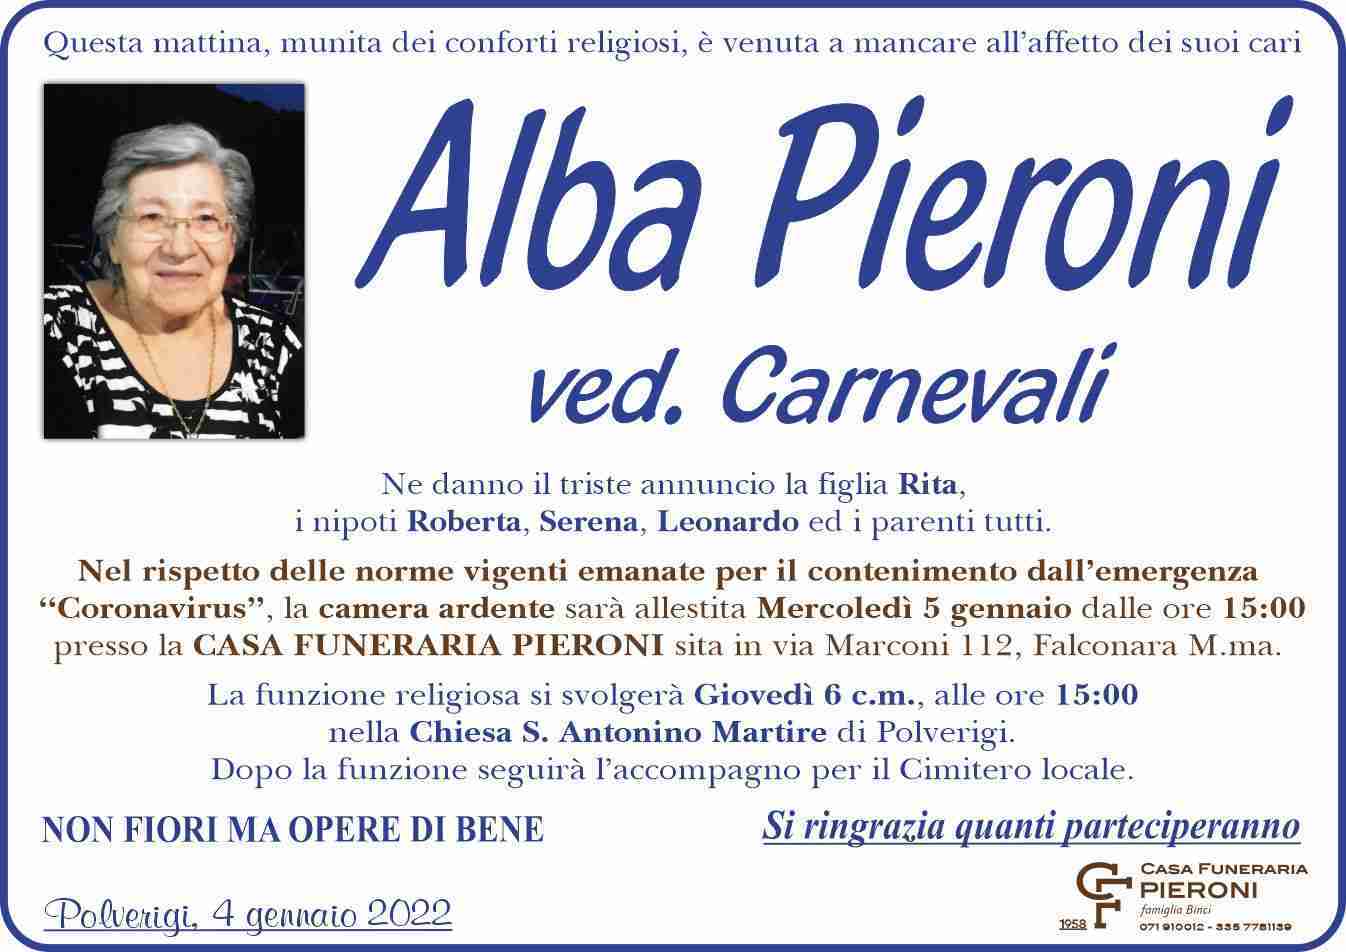 Alba Pieroni